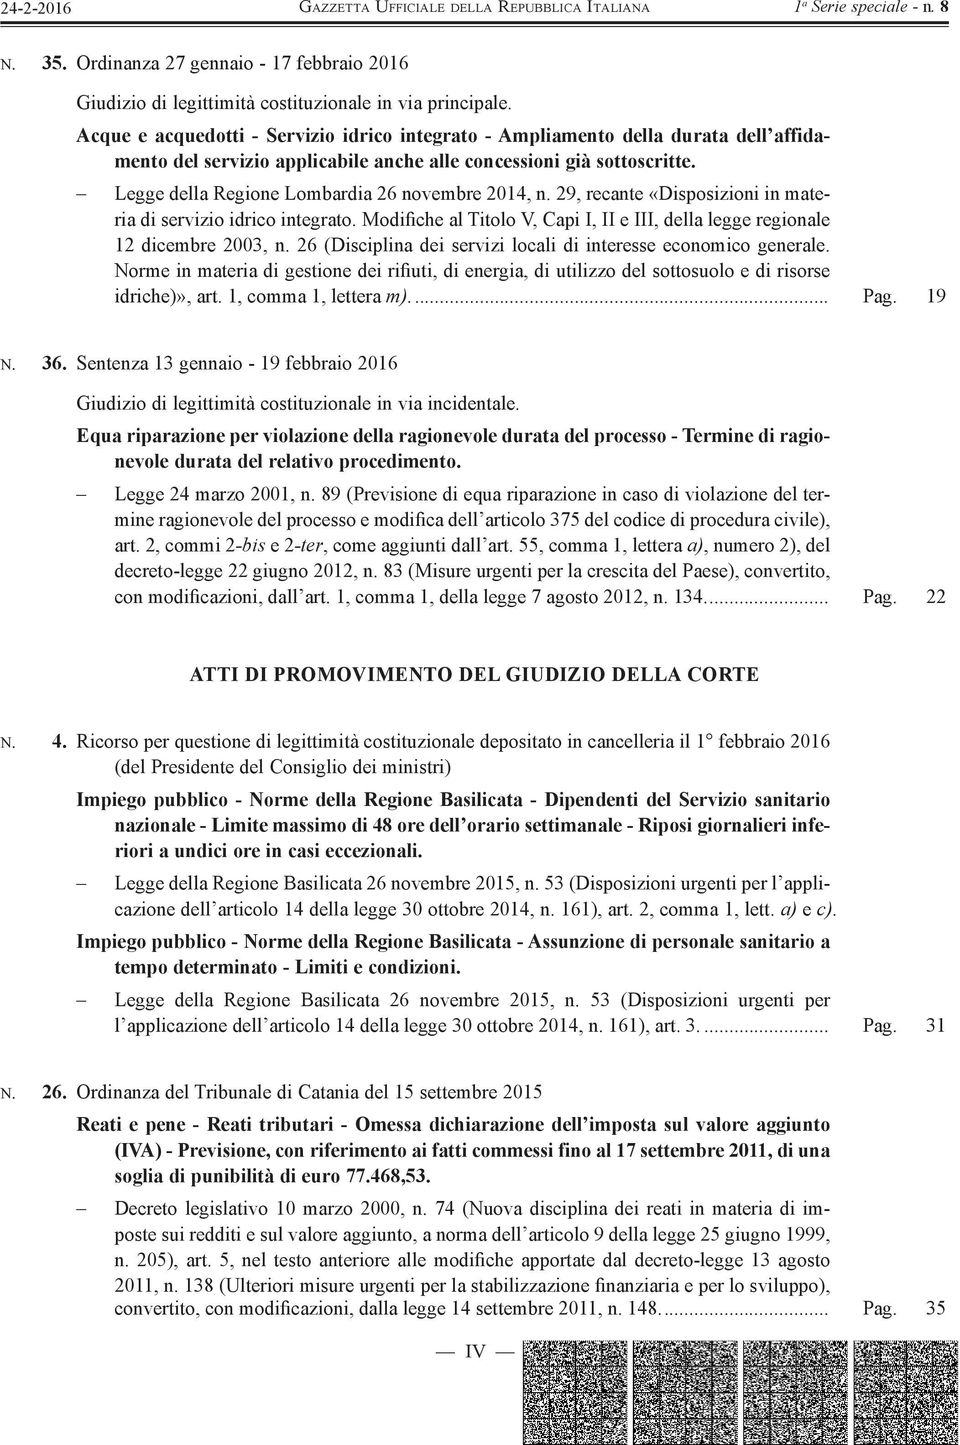 Legge della Regione Lombardia 26 novembre 2014, n. 29, recante «Disposizioni in materia di servizio idrico integrato.